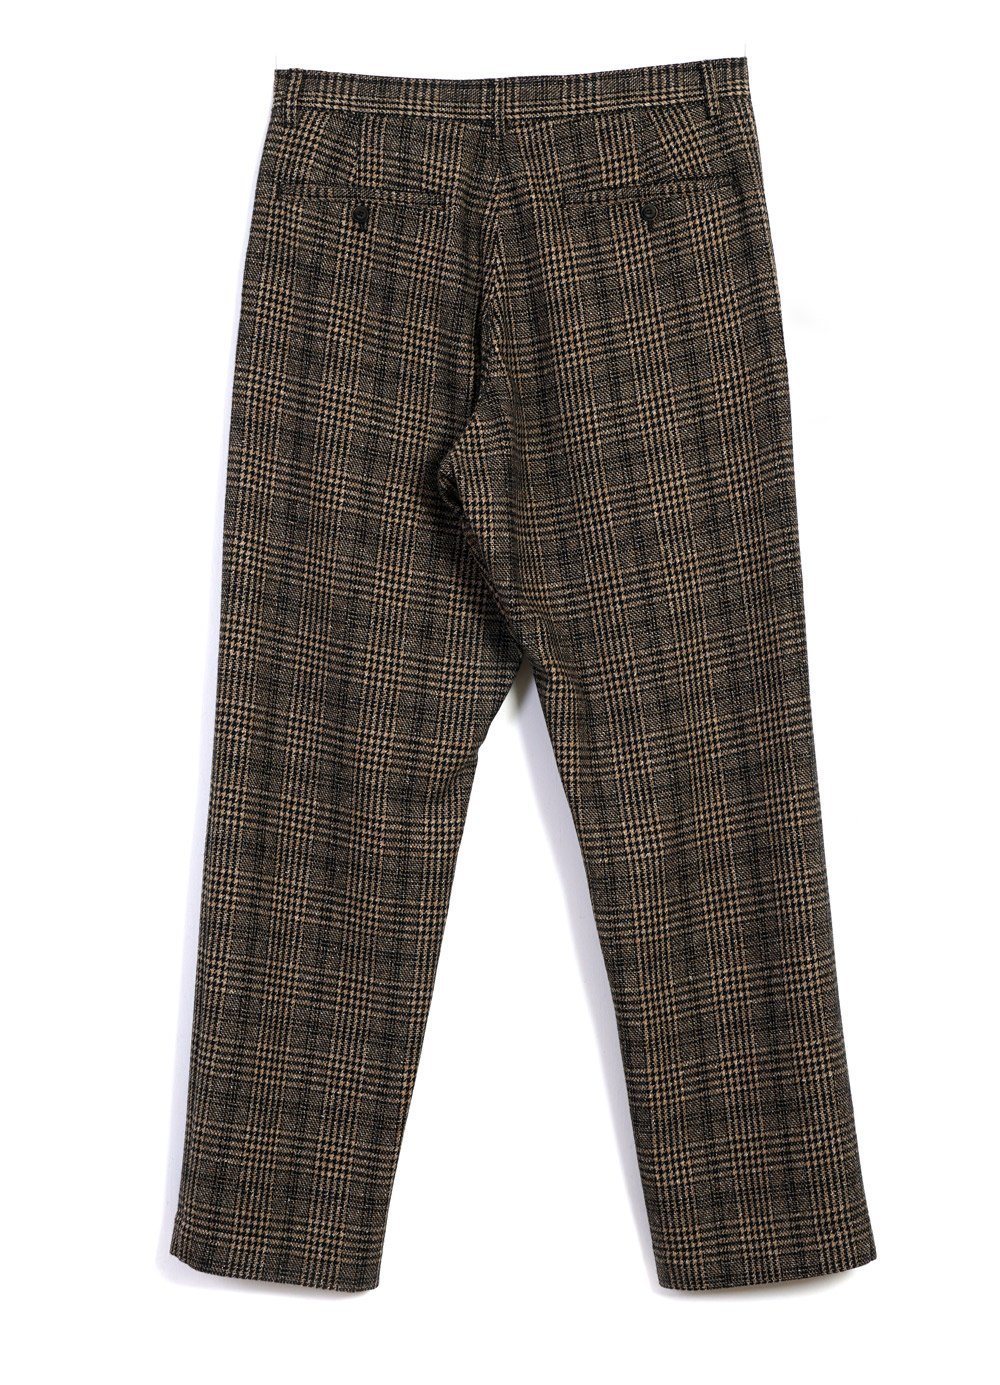 HANSEN Garments - KEN | Wide Cut Trousers | Checkered - HANSEN Garments